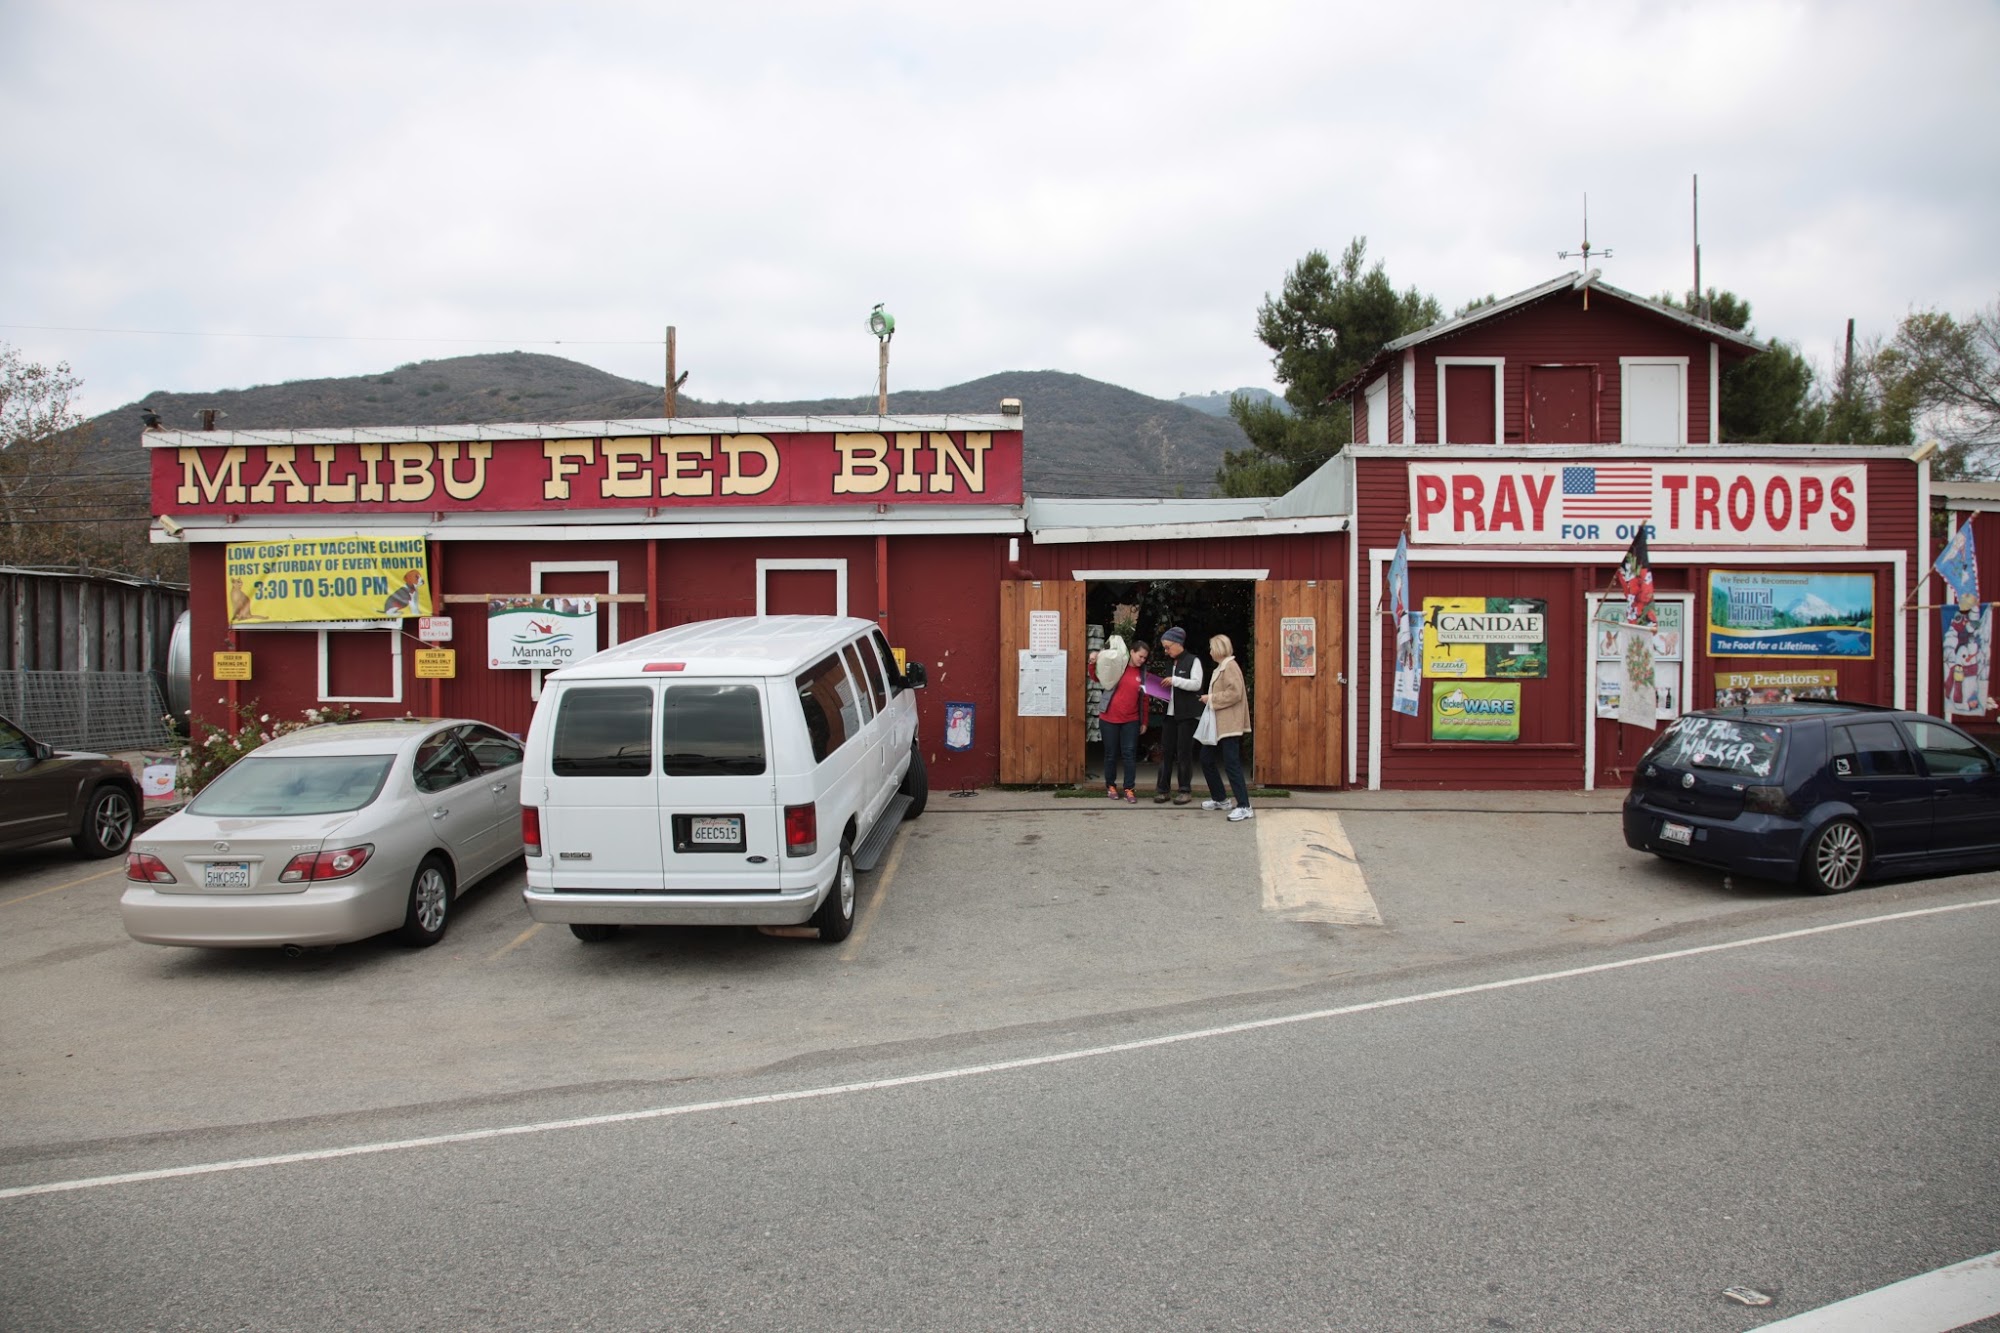 The Malibu Feed Bin